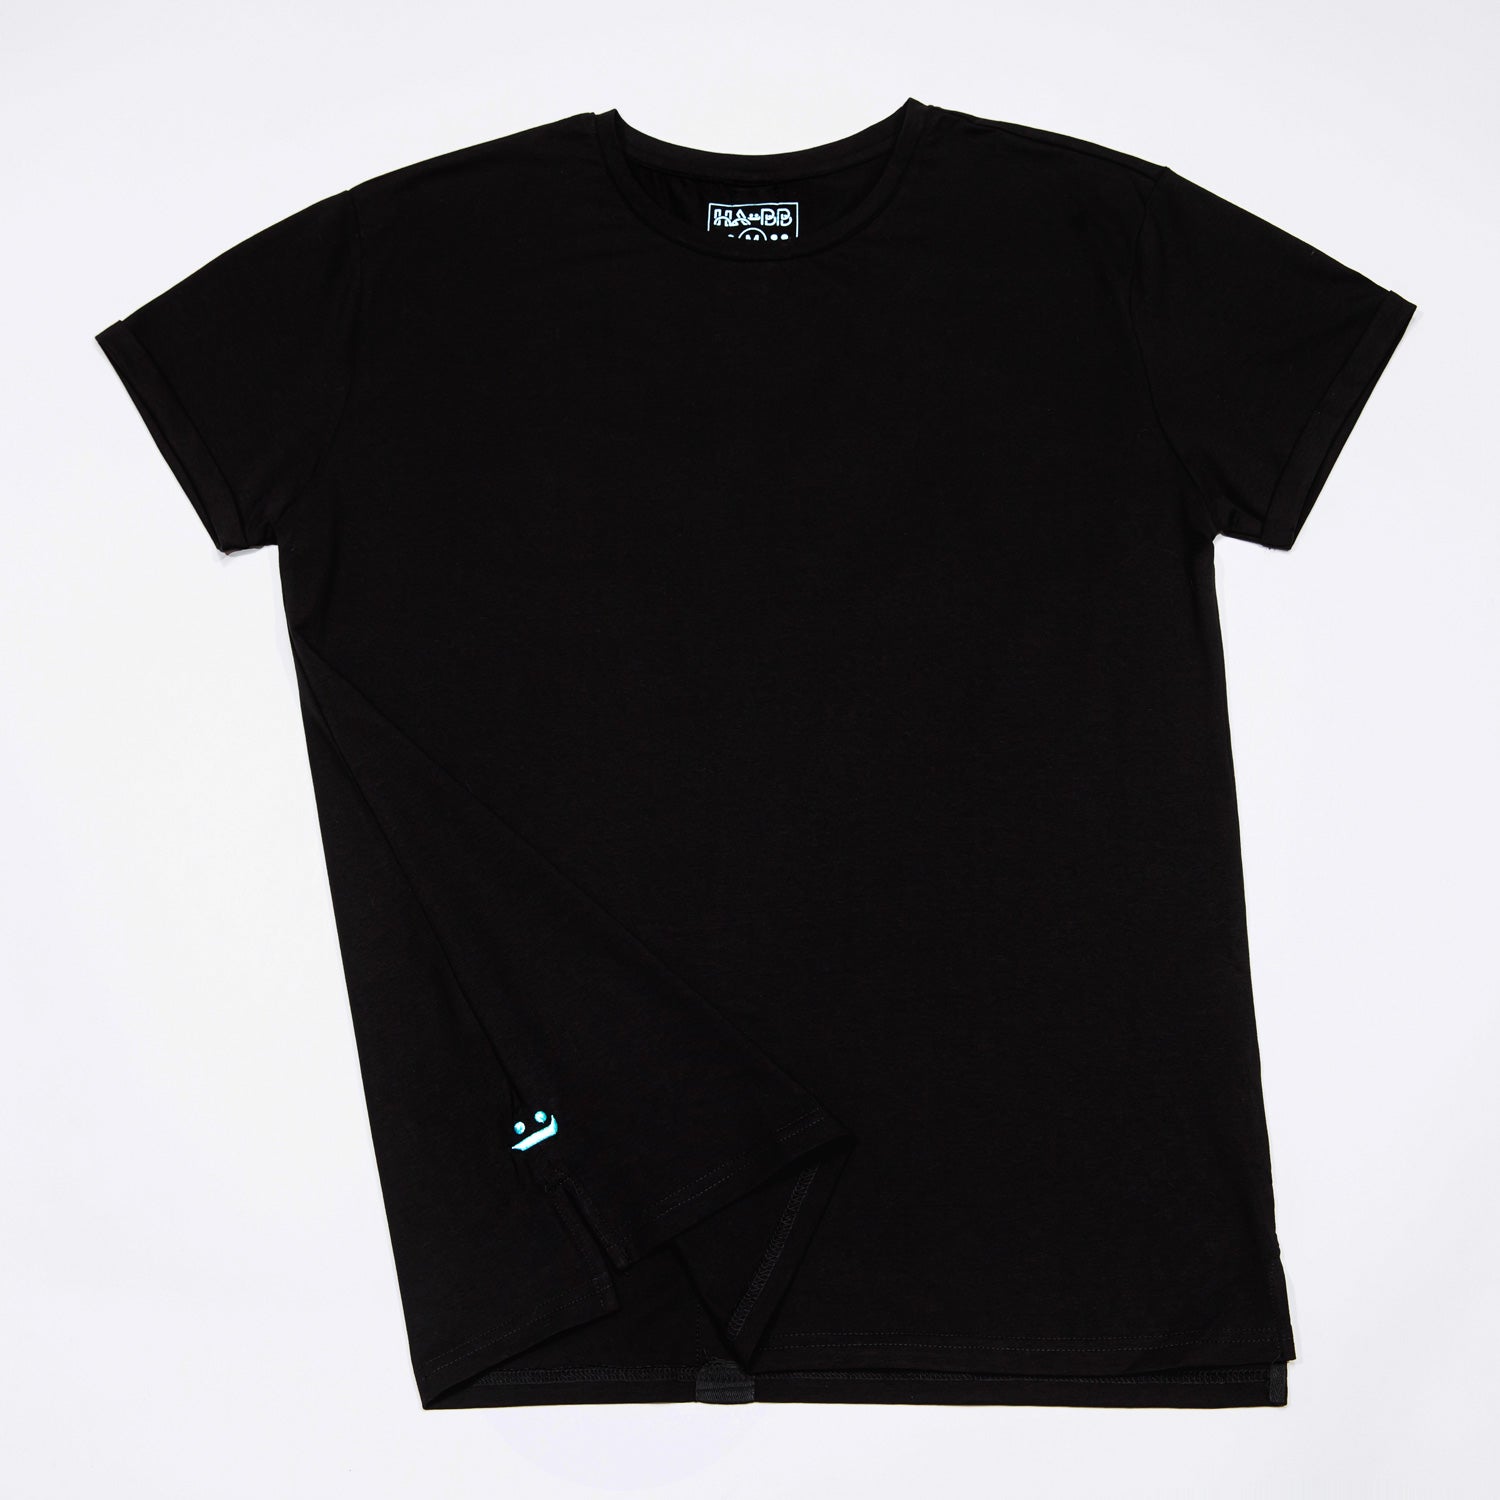 Deep black, T-shirt, shirt, man, plane tee, soft cotton, sleek, front view,